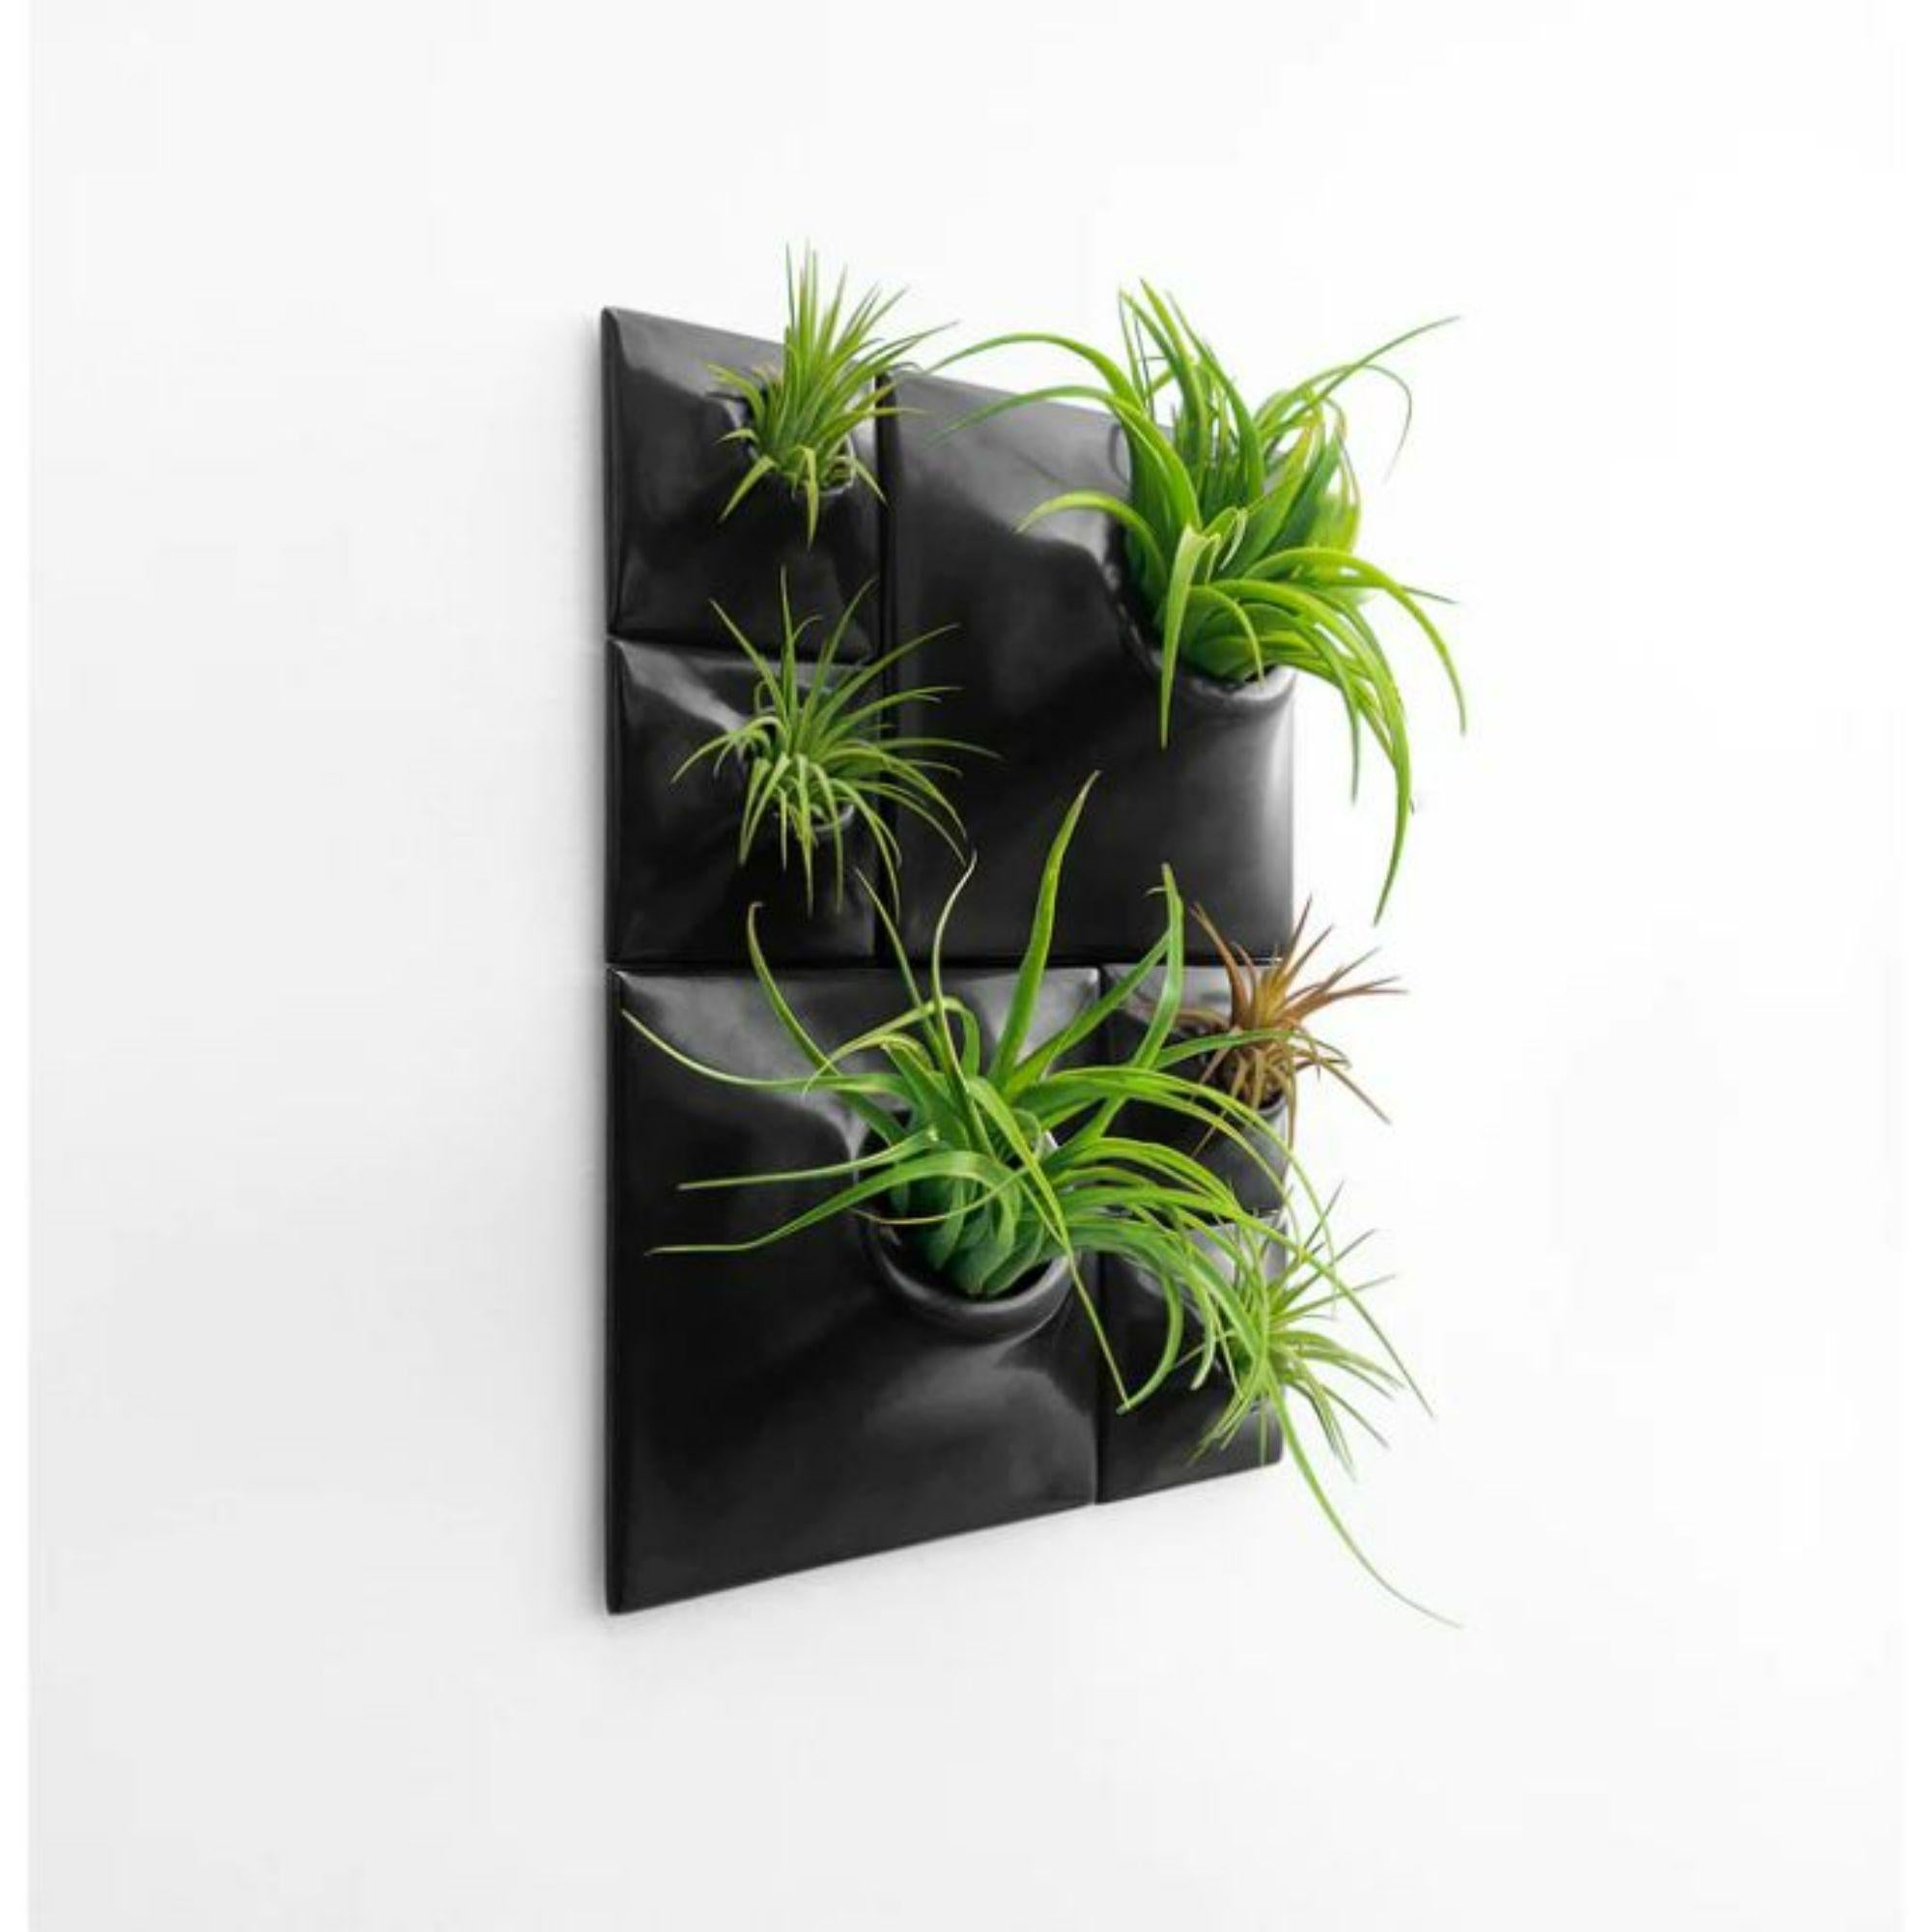 American Modern Black Wall Planter Set, Living Wall Sculpture, Moss Wall Art, Node BR2 For Sale